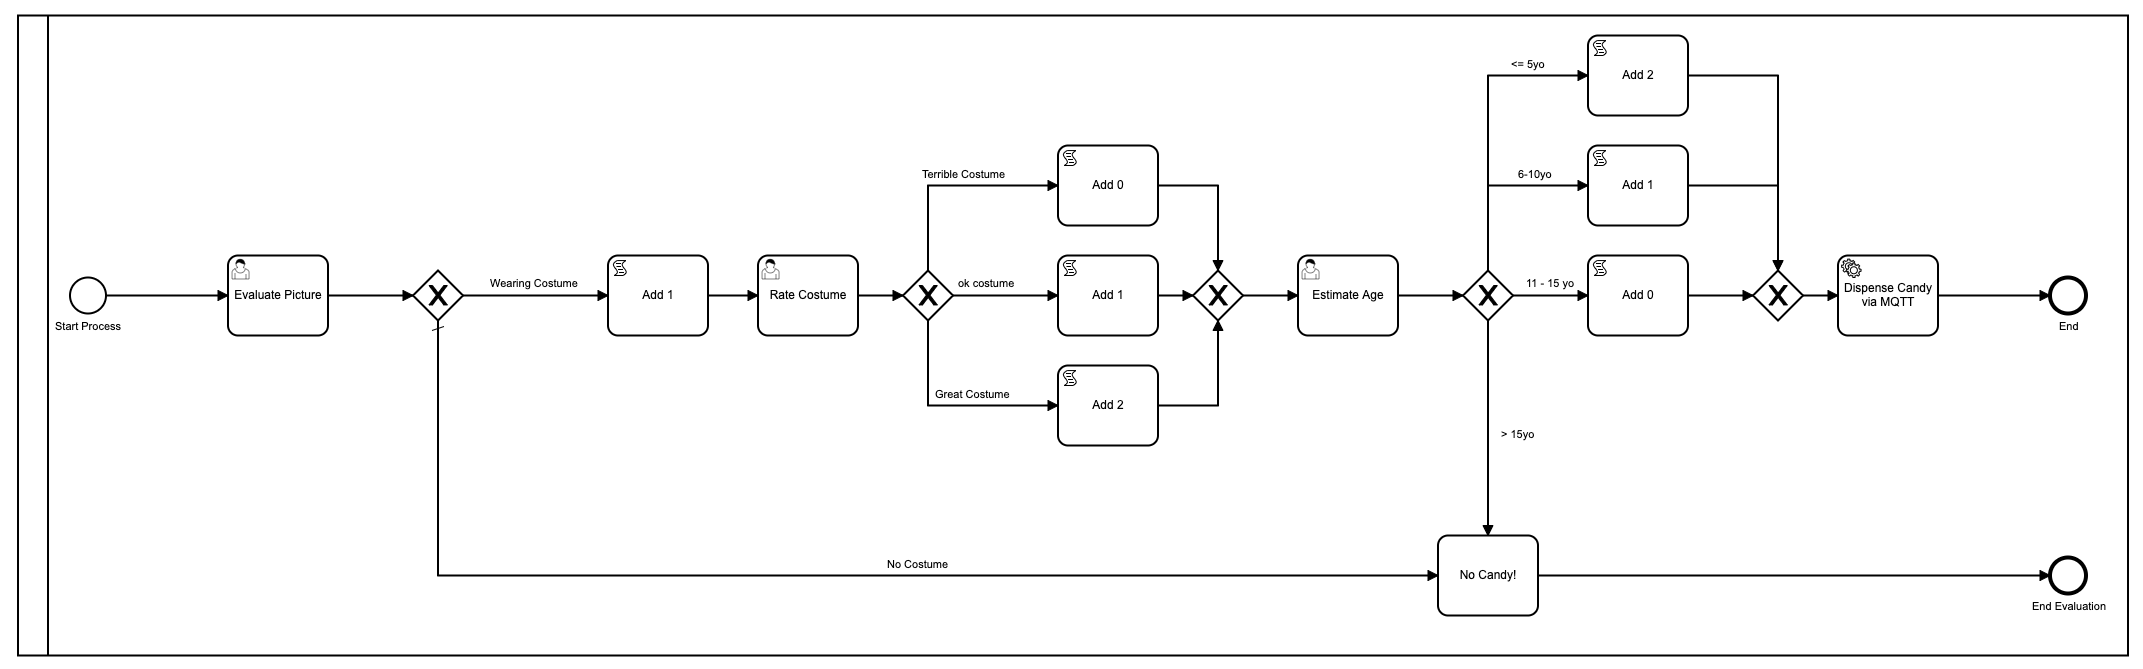 BPMN-model met meerdere stappen en 3 menselijke taken